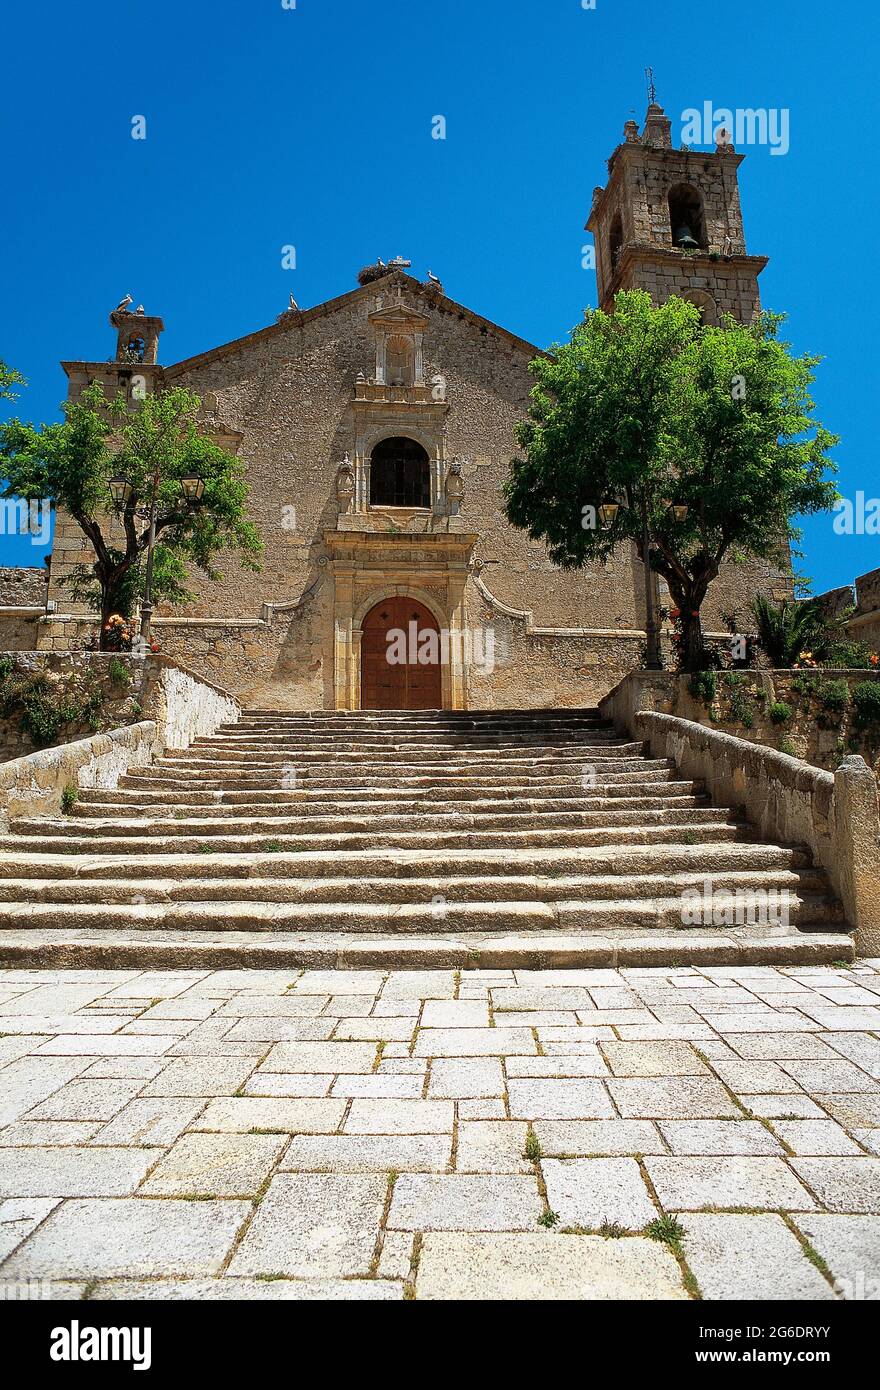 Espagne, Estrémadure, province de Cáceres, Valence de Alcantara. Église de Nuestra Señora de Rocamador (notre-Dame de Rocamador). Érigée au XVe siècle, elle fut l'endroit en octobre 1497 pour le mariage entre le roi du Portugal, Don Manuel 'la chance' et Doña Isabel, fille des monarques catholiques, à laquelle assista la Reine. L'église actuelle a été construite en 1546, mais a été sérieusement endommagée en 1664 après la guerre entre l'Espagne et le Portugal. À la fin du XVIIe siècle, il a été reconstruit. Banque D'Images